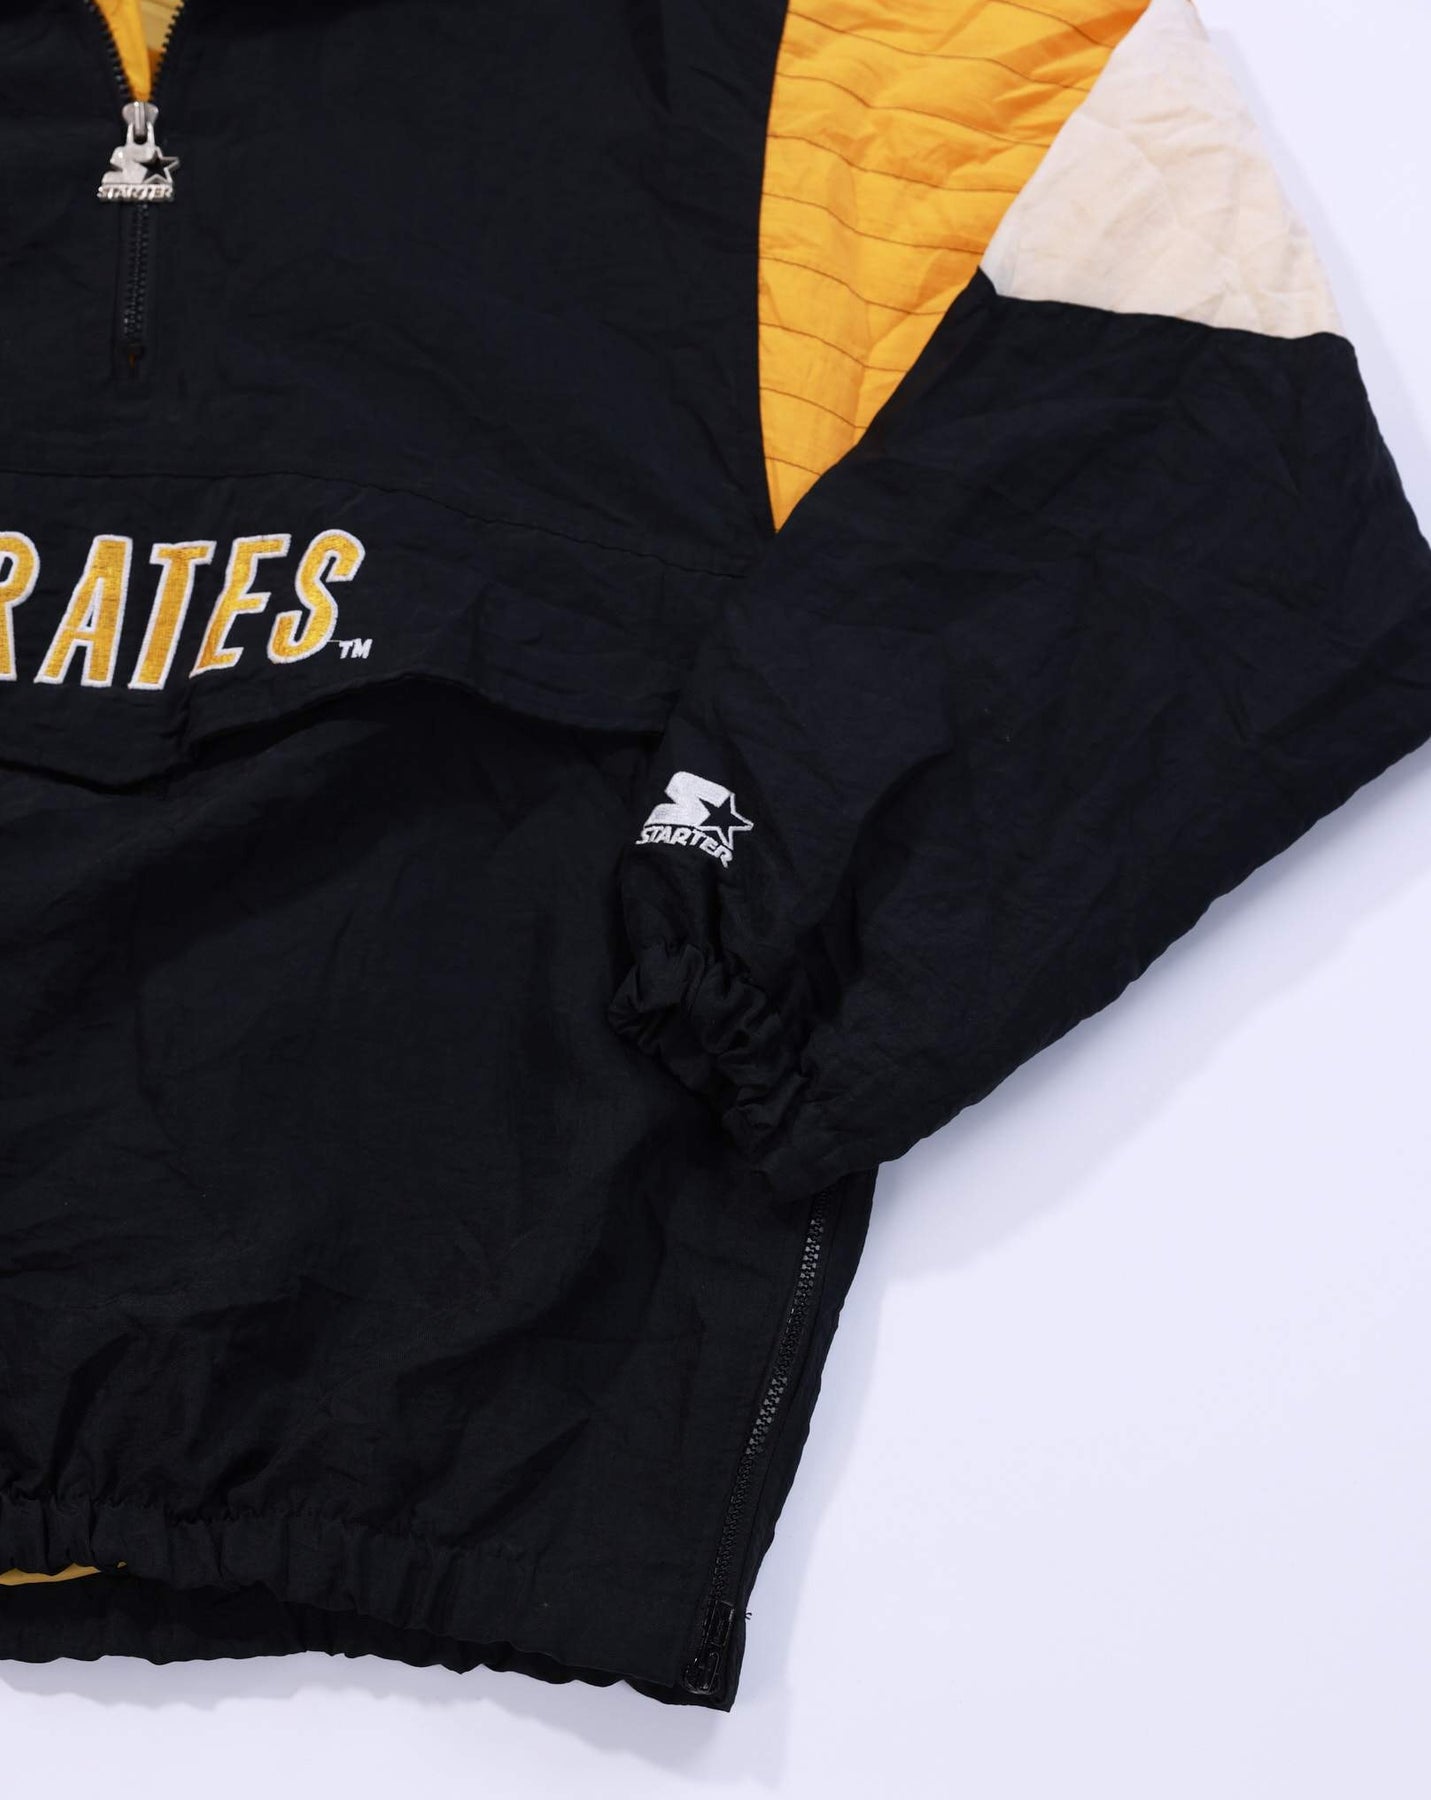 Pittsburgh Pirates Star Wars Night Shirt - Reallgraphics